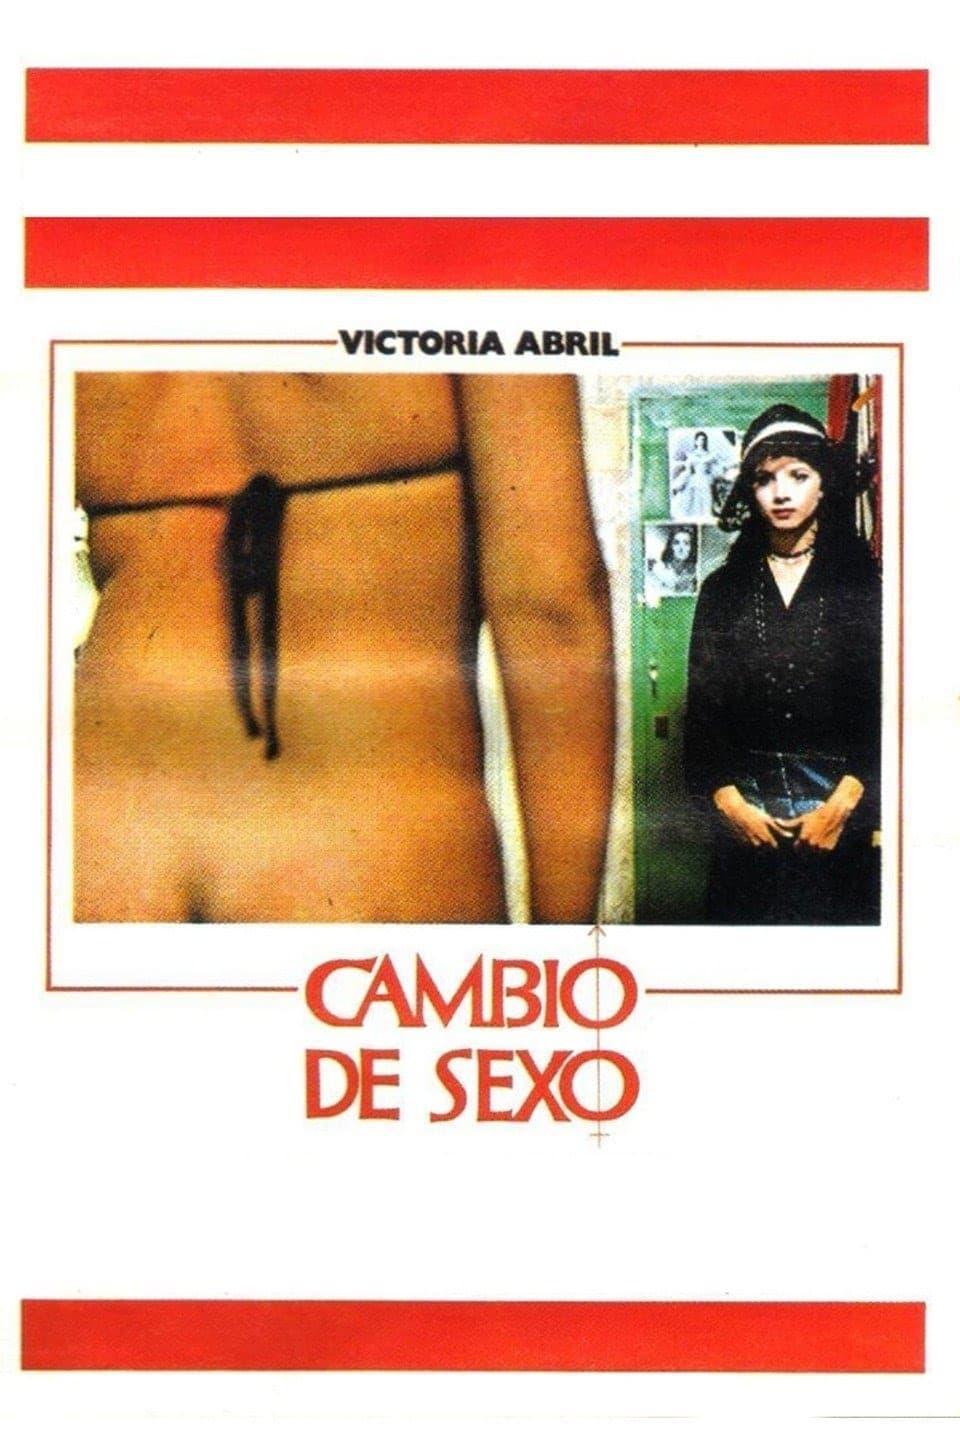 Cambio de sexo poster